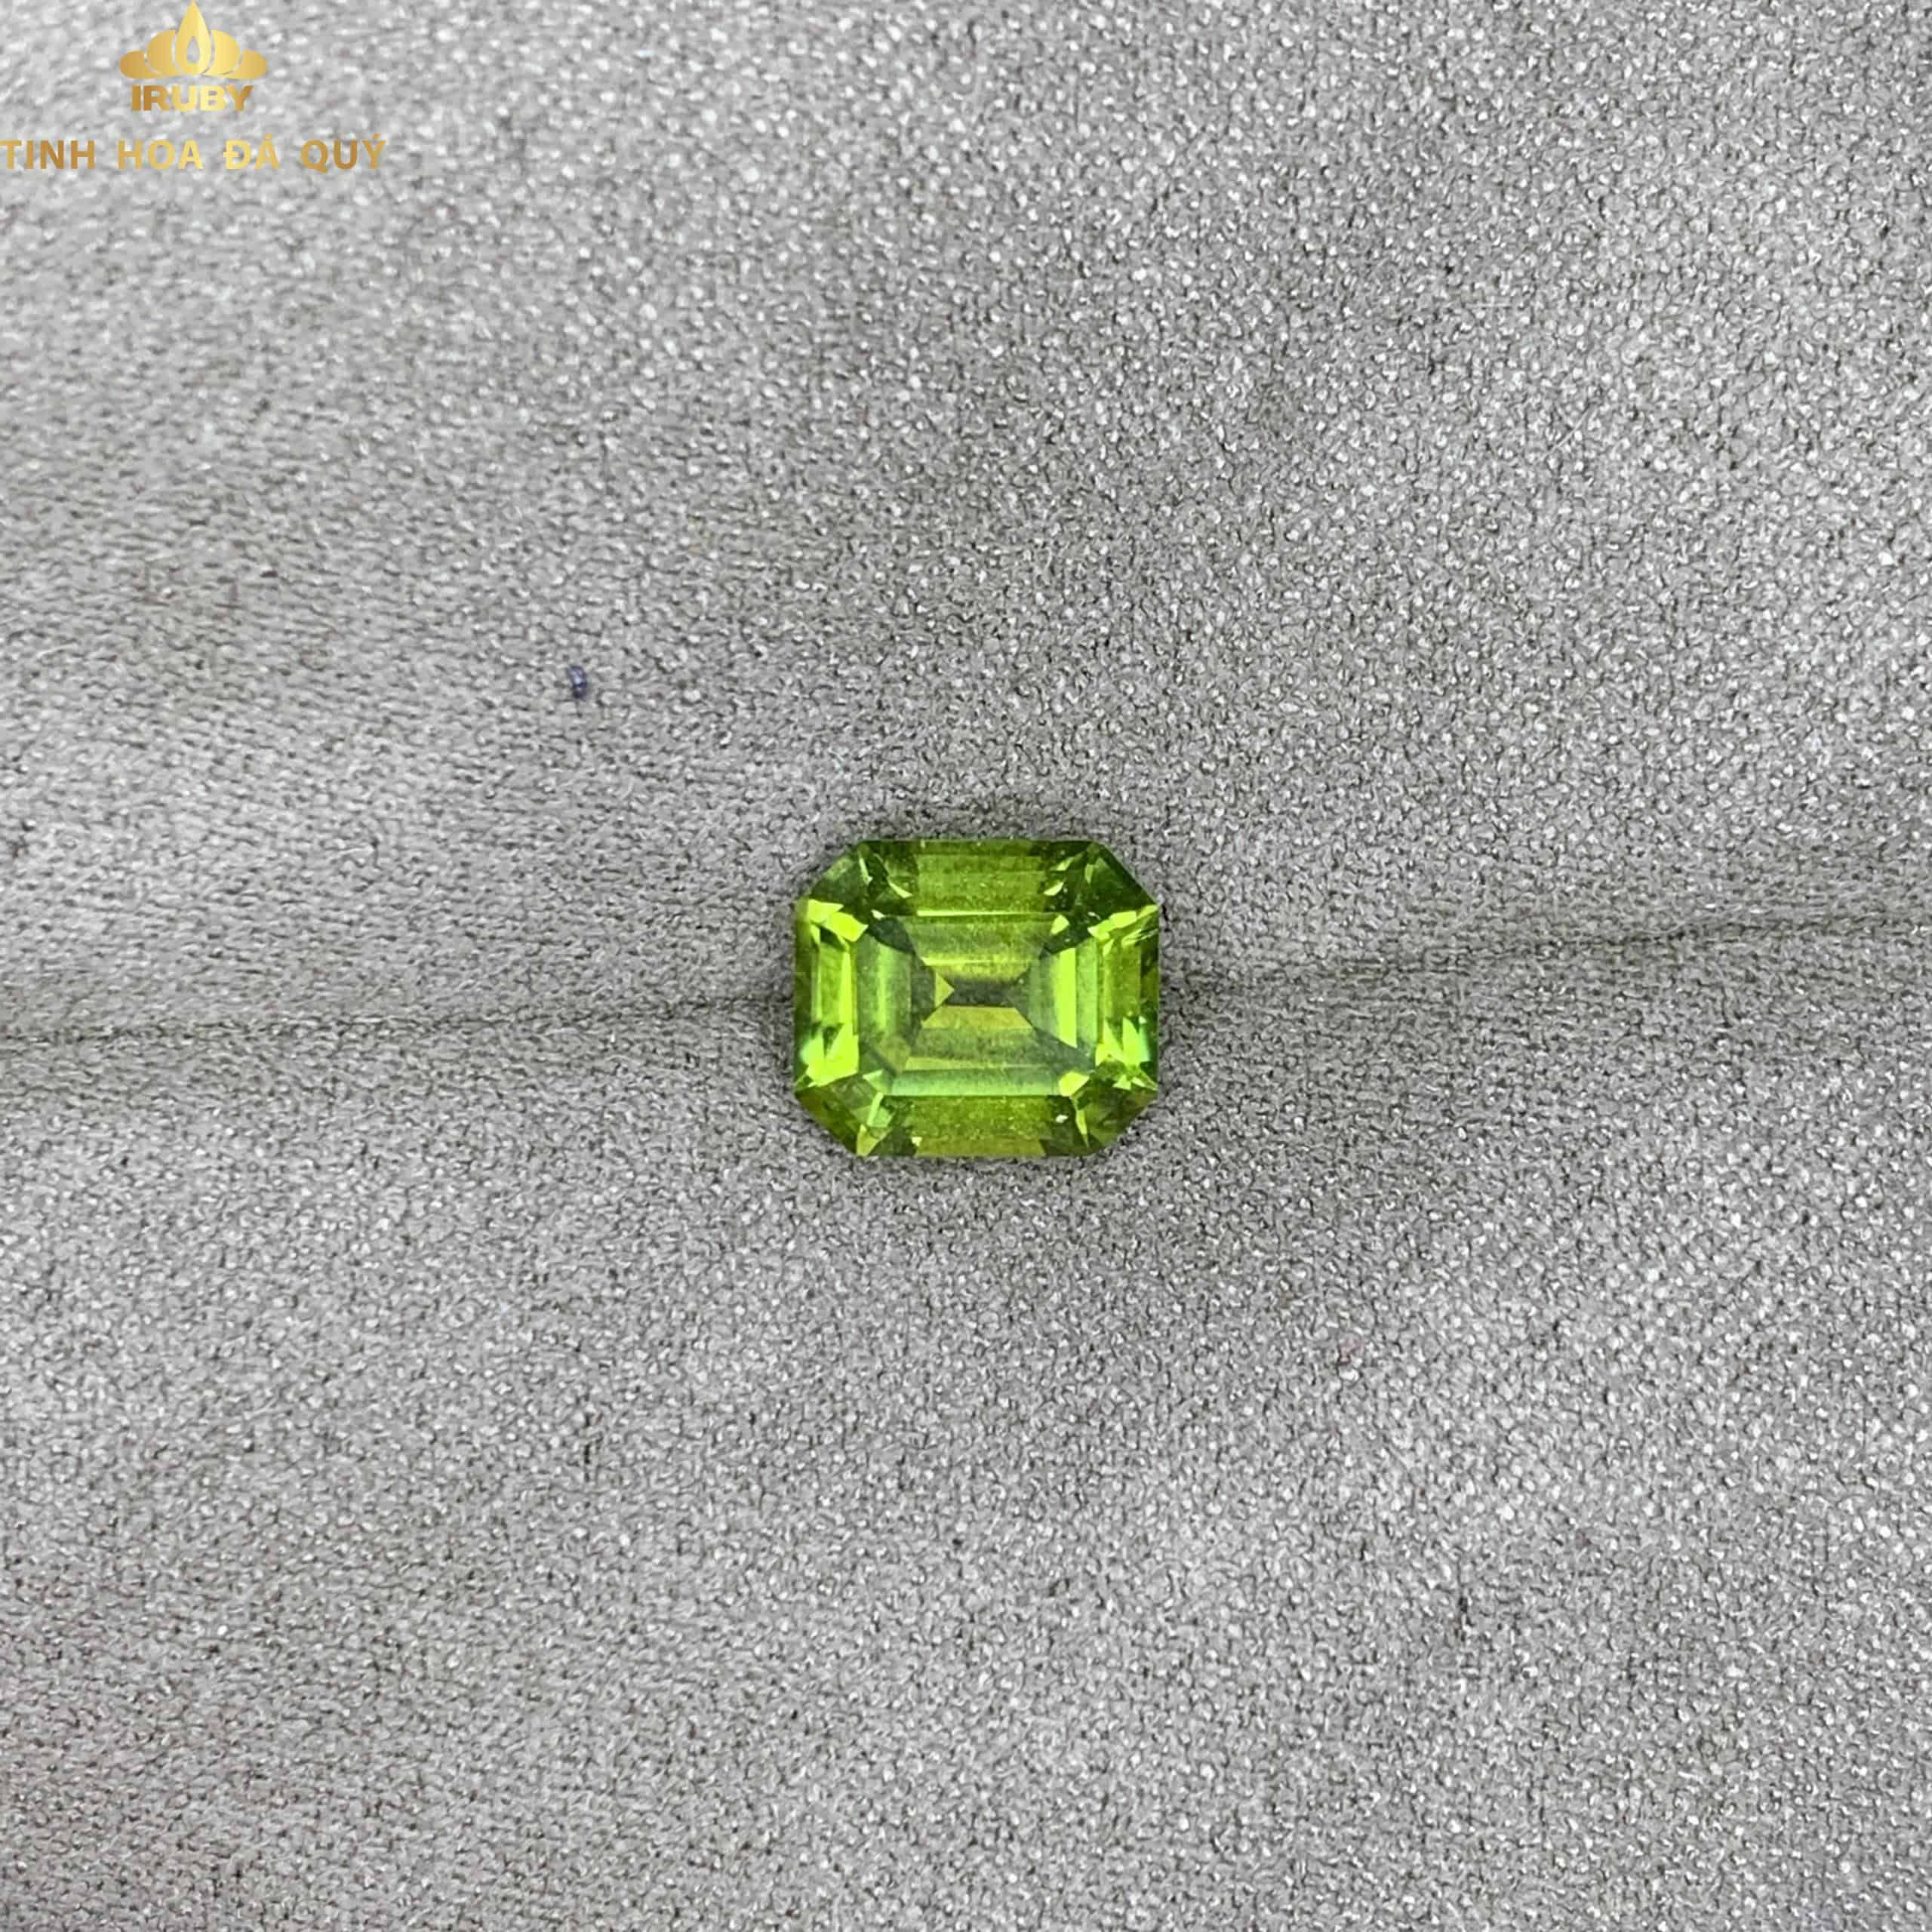 Viên Tourmaline Emerald xanh lá mạ 2,05ct - IRTM 233205 hình 4